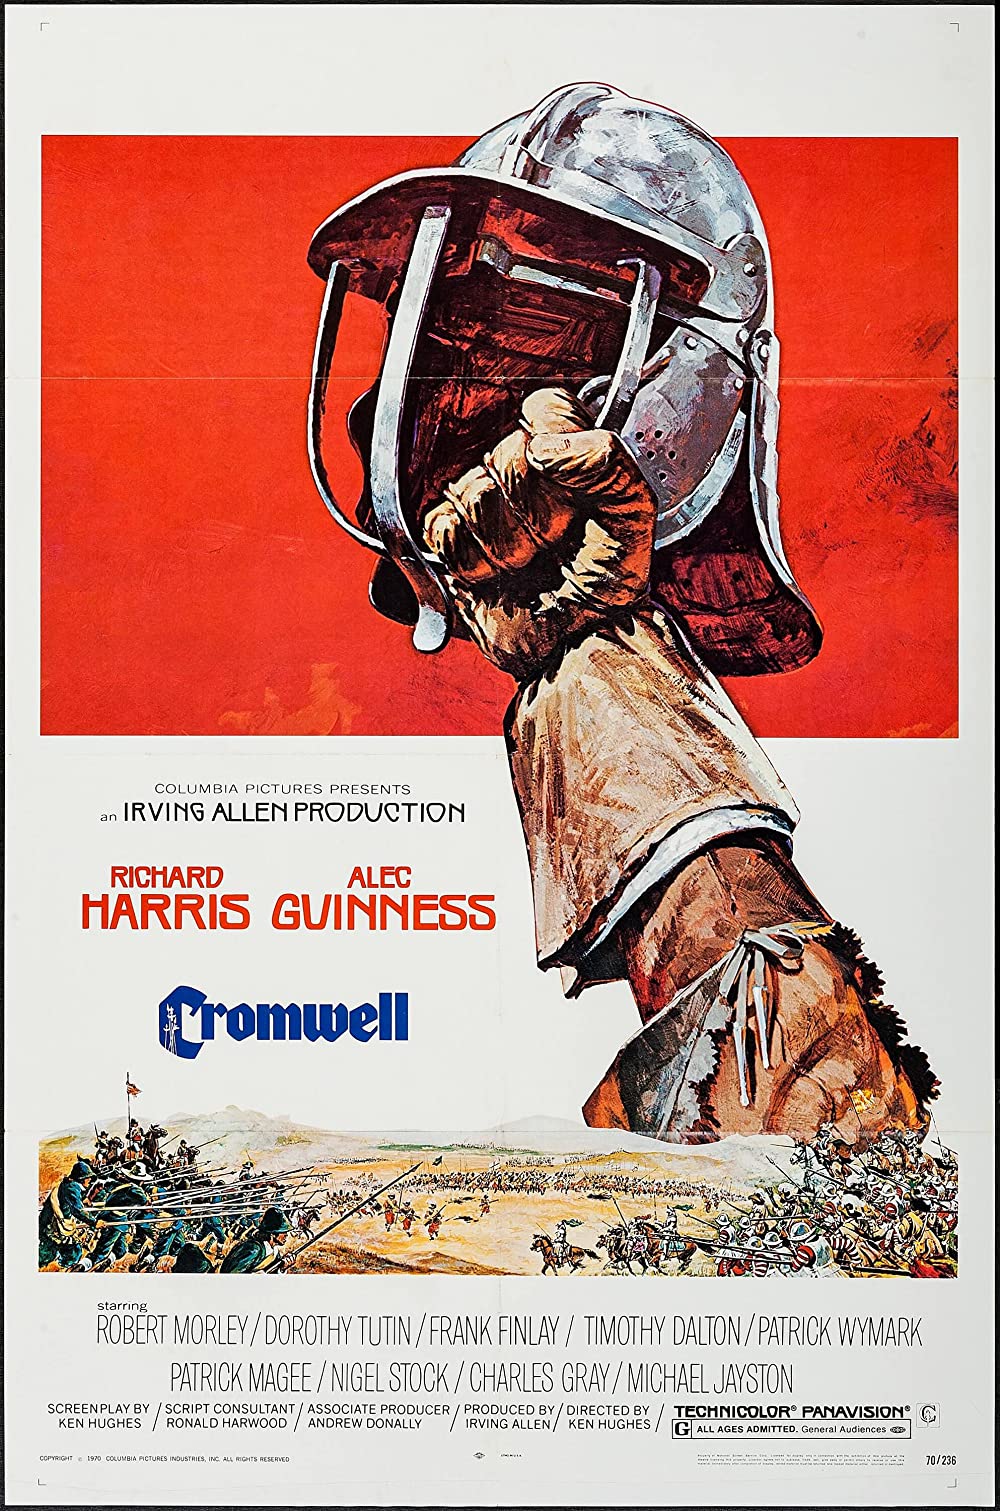 Filmbeschreibung zu Cromwell - Krieg dem König